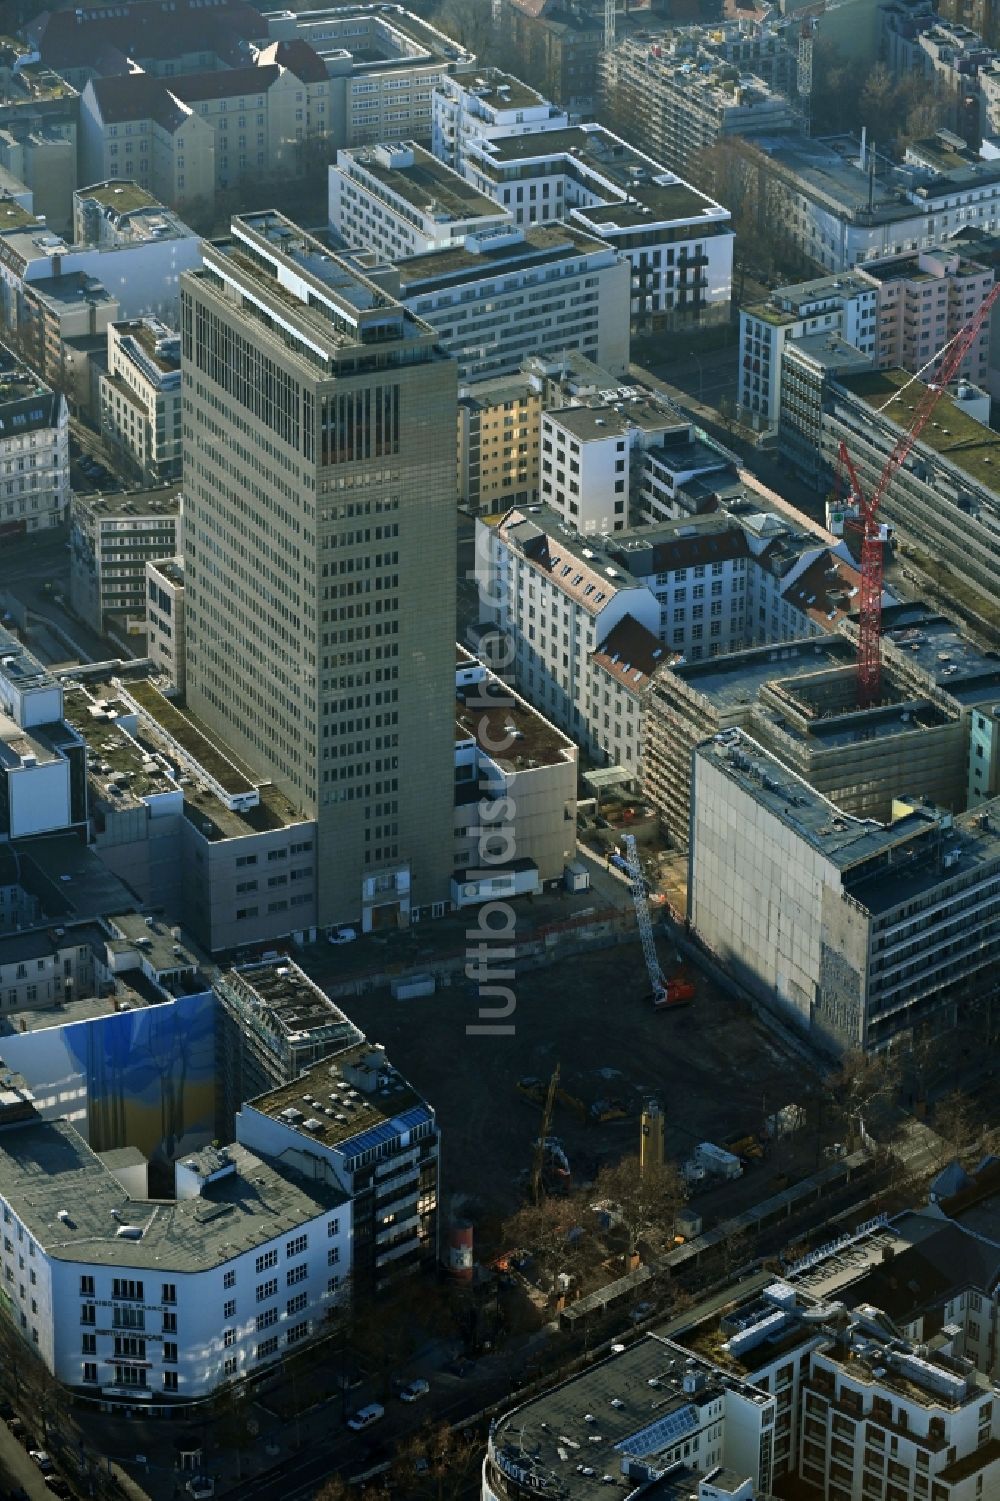 Luftaufnahme Berlin - Umbau eines Büro- und Geschäftshauseskomplexes Fürst im Ortsteil Charlottenburg in Berlin, Deutschland